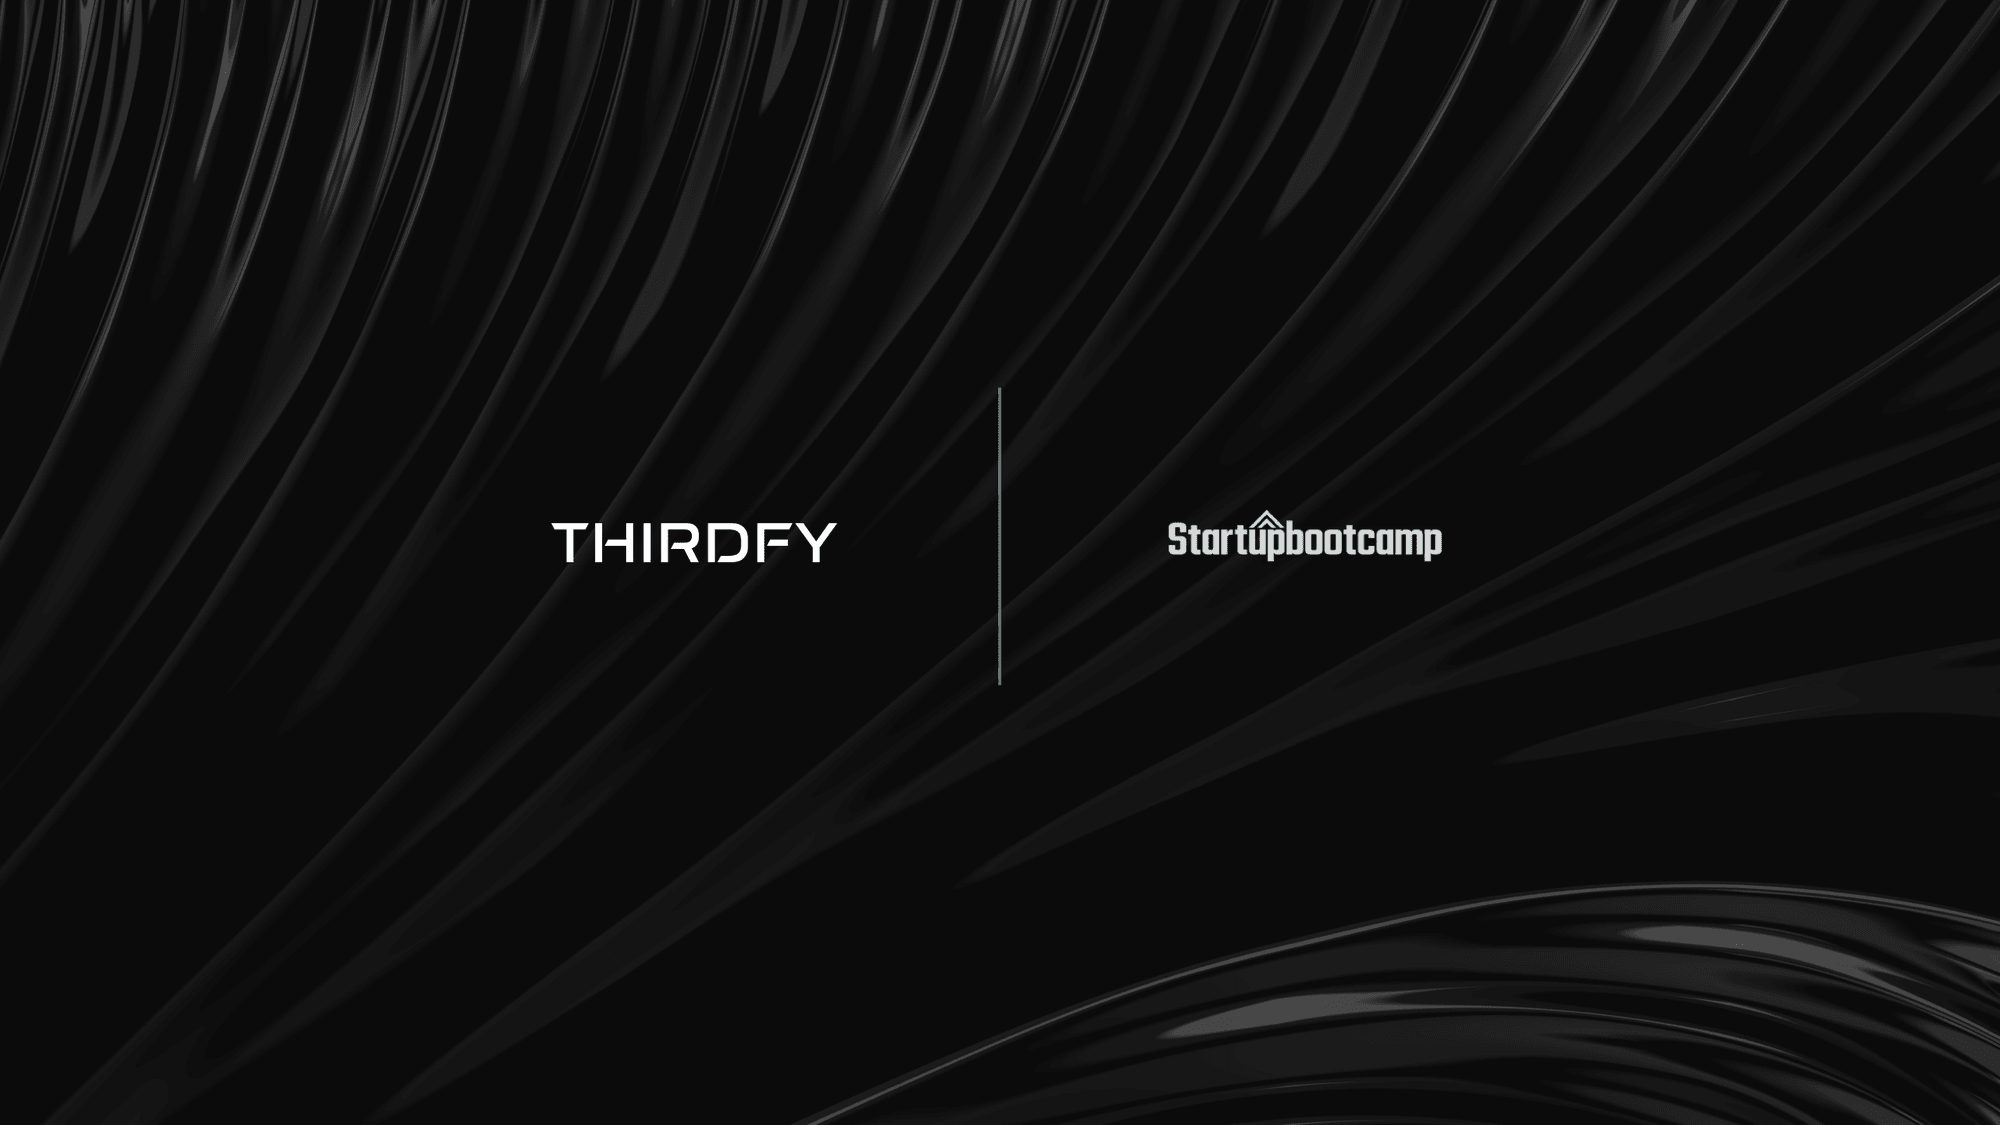 Thirdfy joins Startupbootcamp!